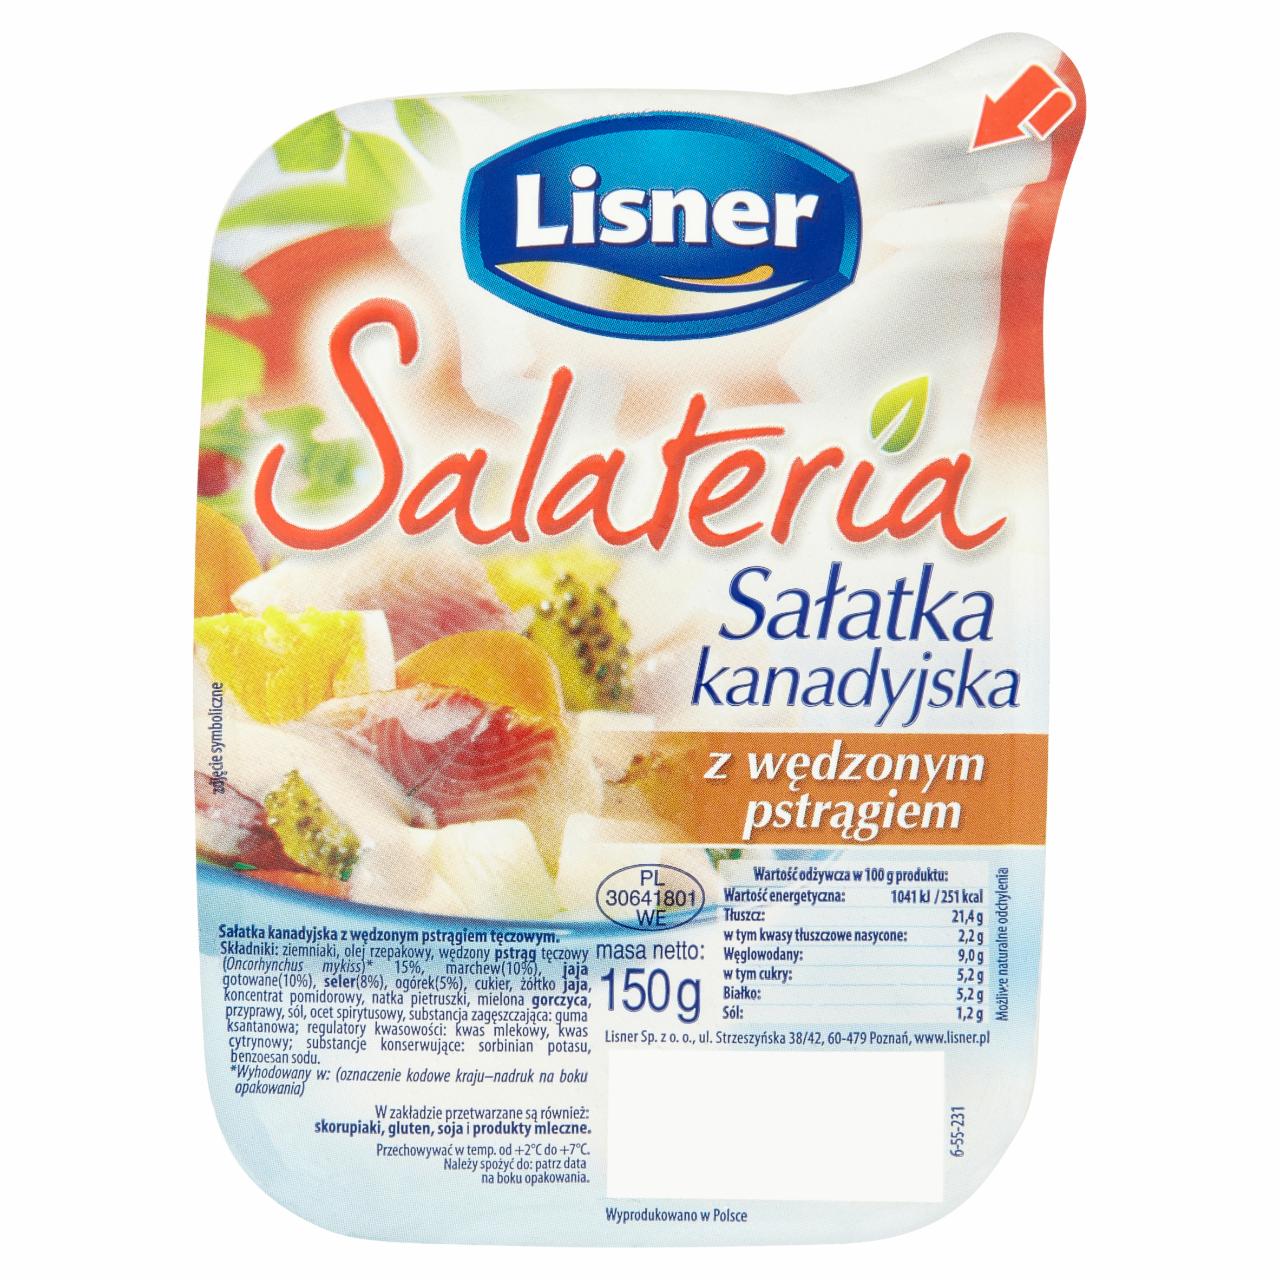 Képek - Lisner Salateria füstölt pisztrángos kanadai saláta 150 g